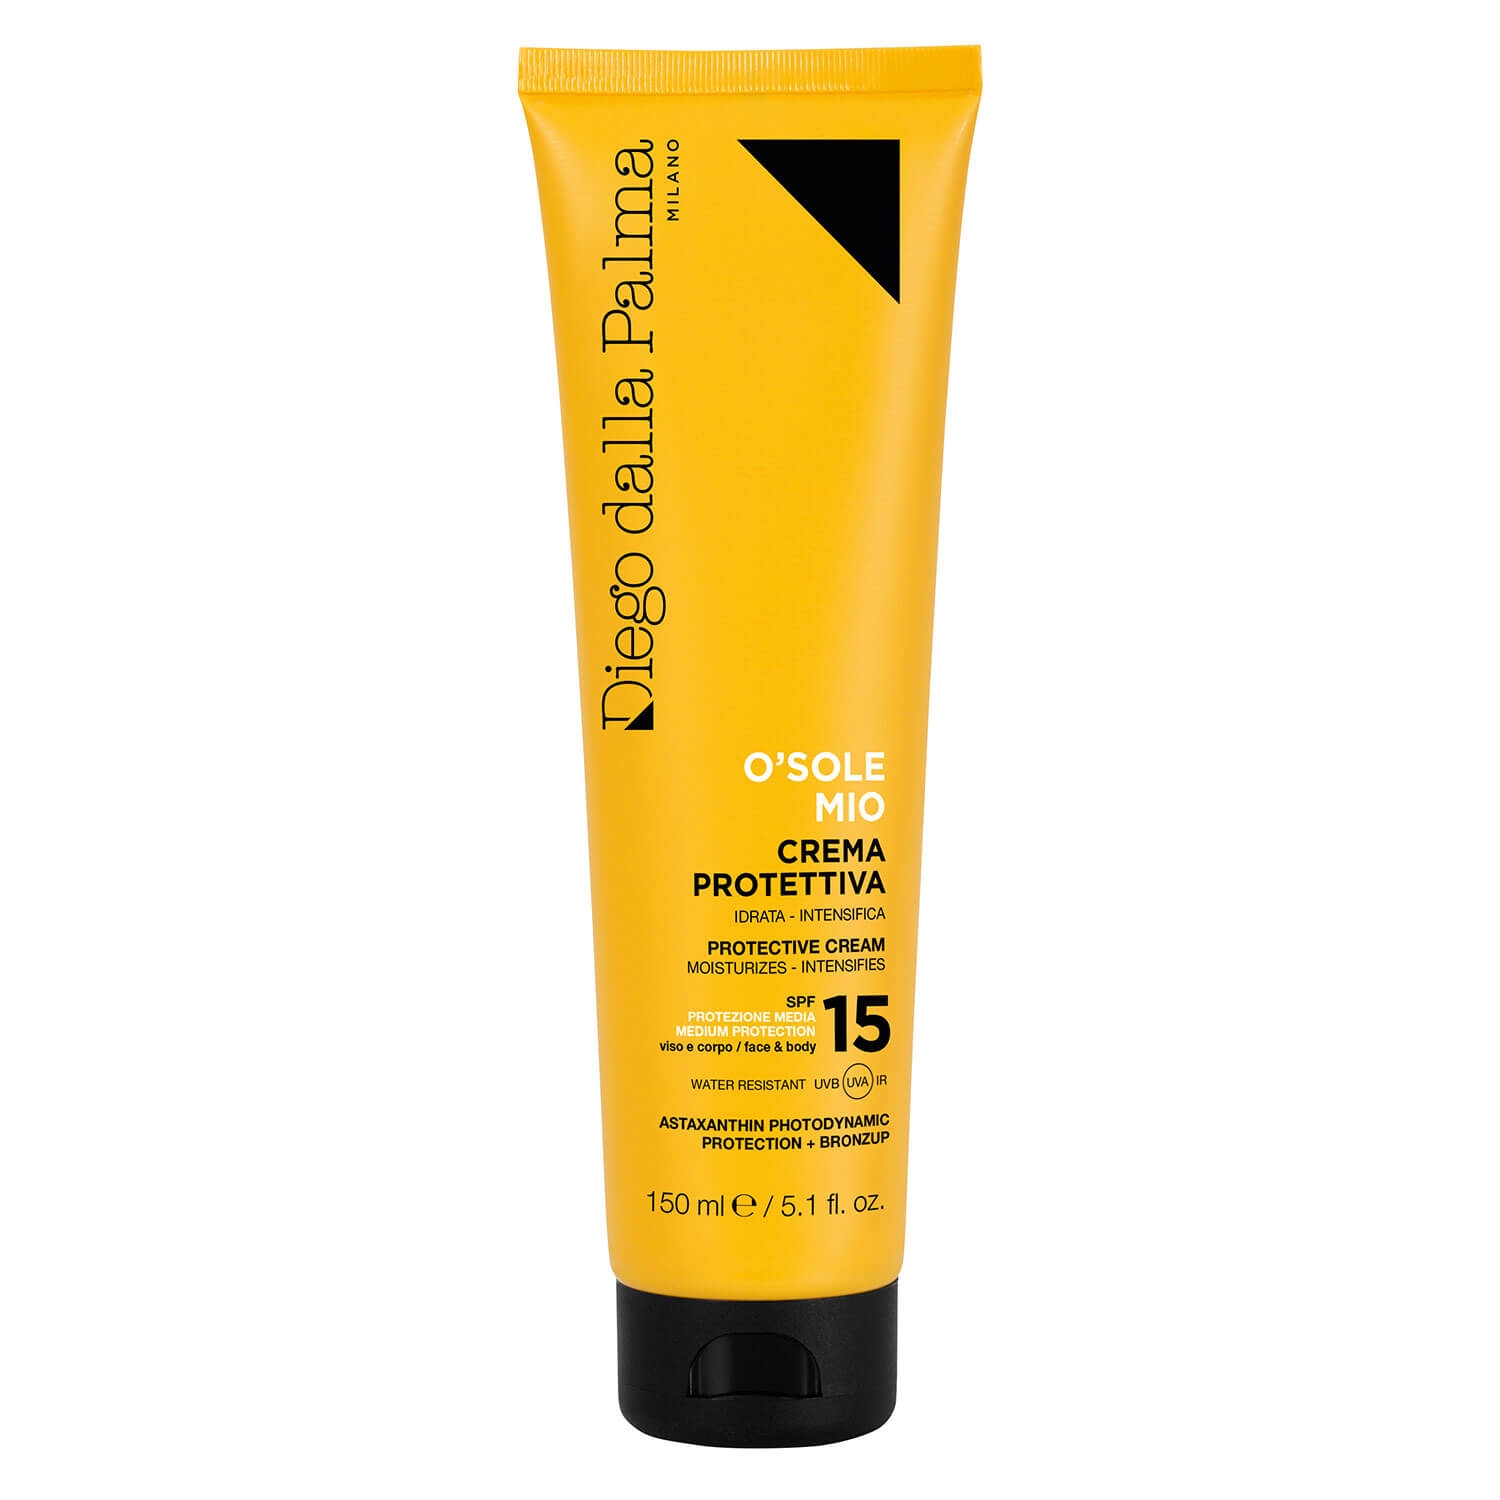 Product image from Diego dalla Palma Sun - O'SOLE MIO Protective Face & Body Cream SPF15